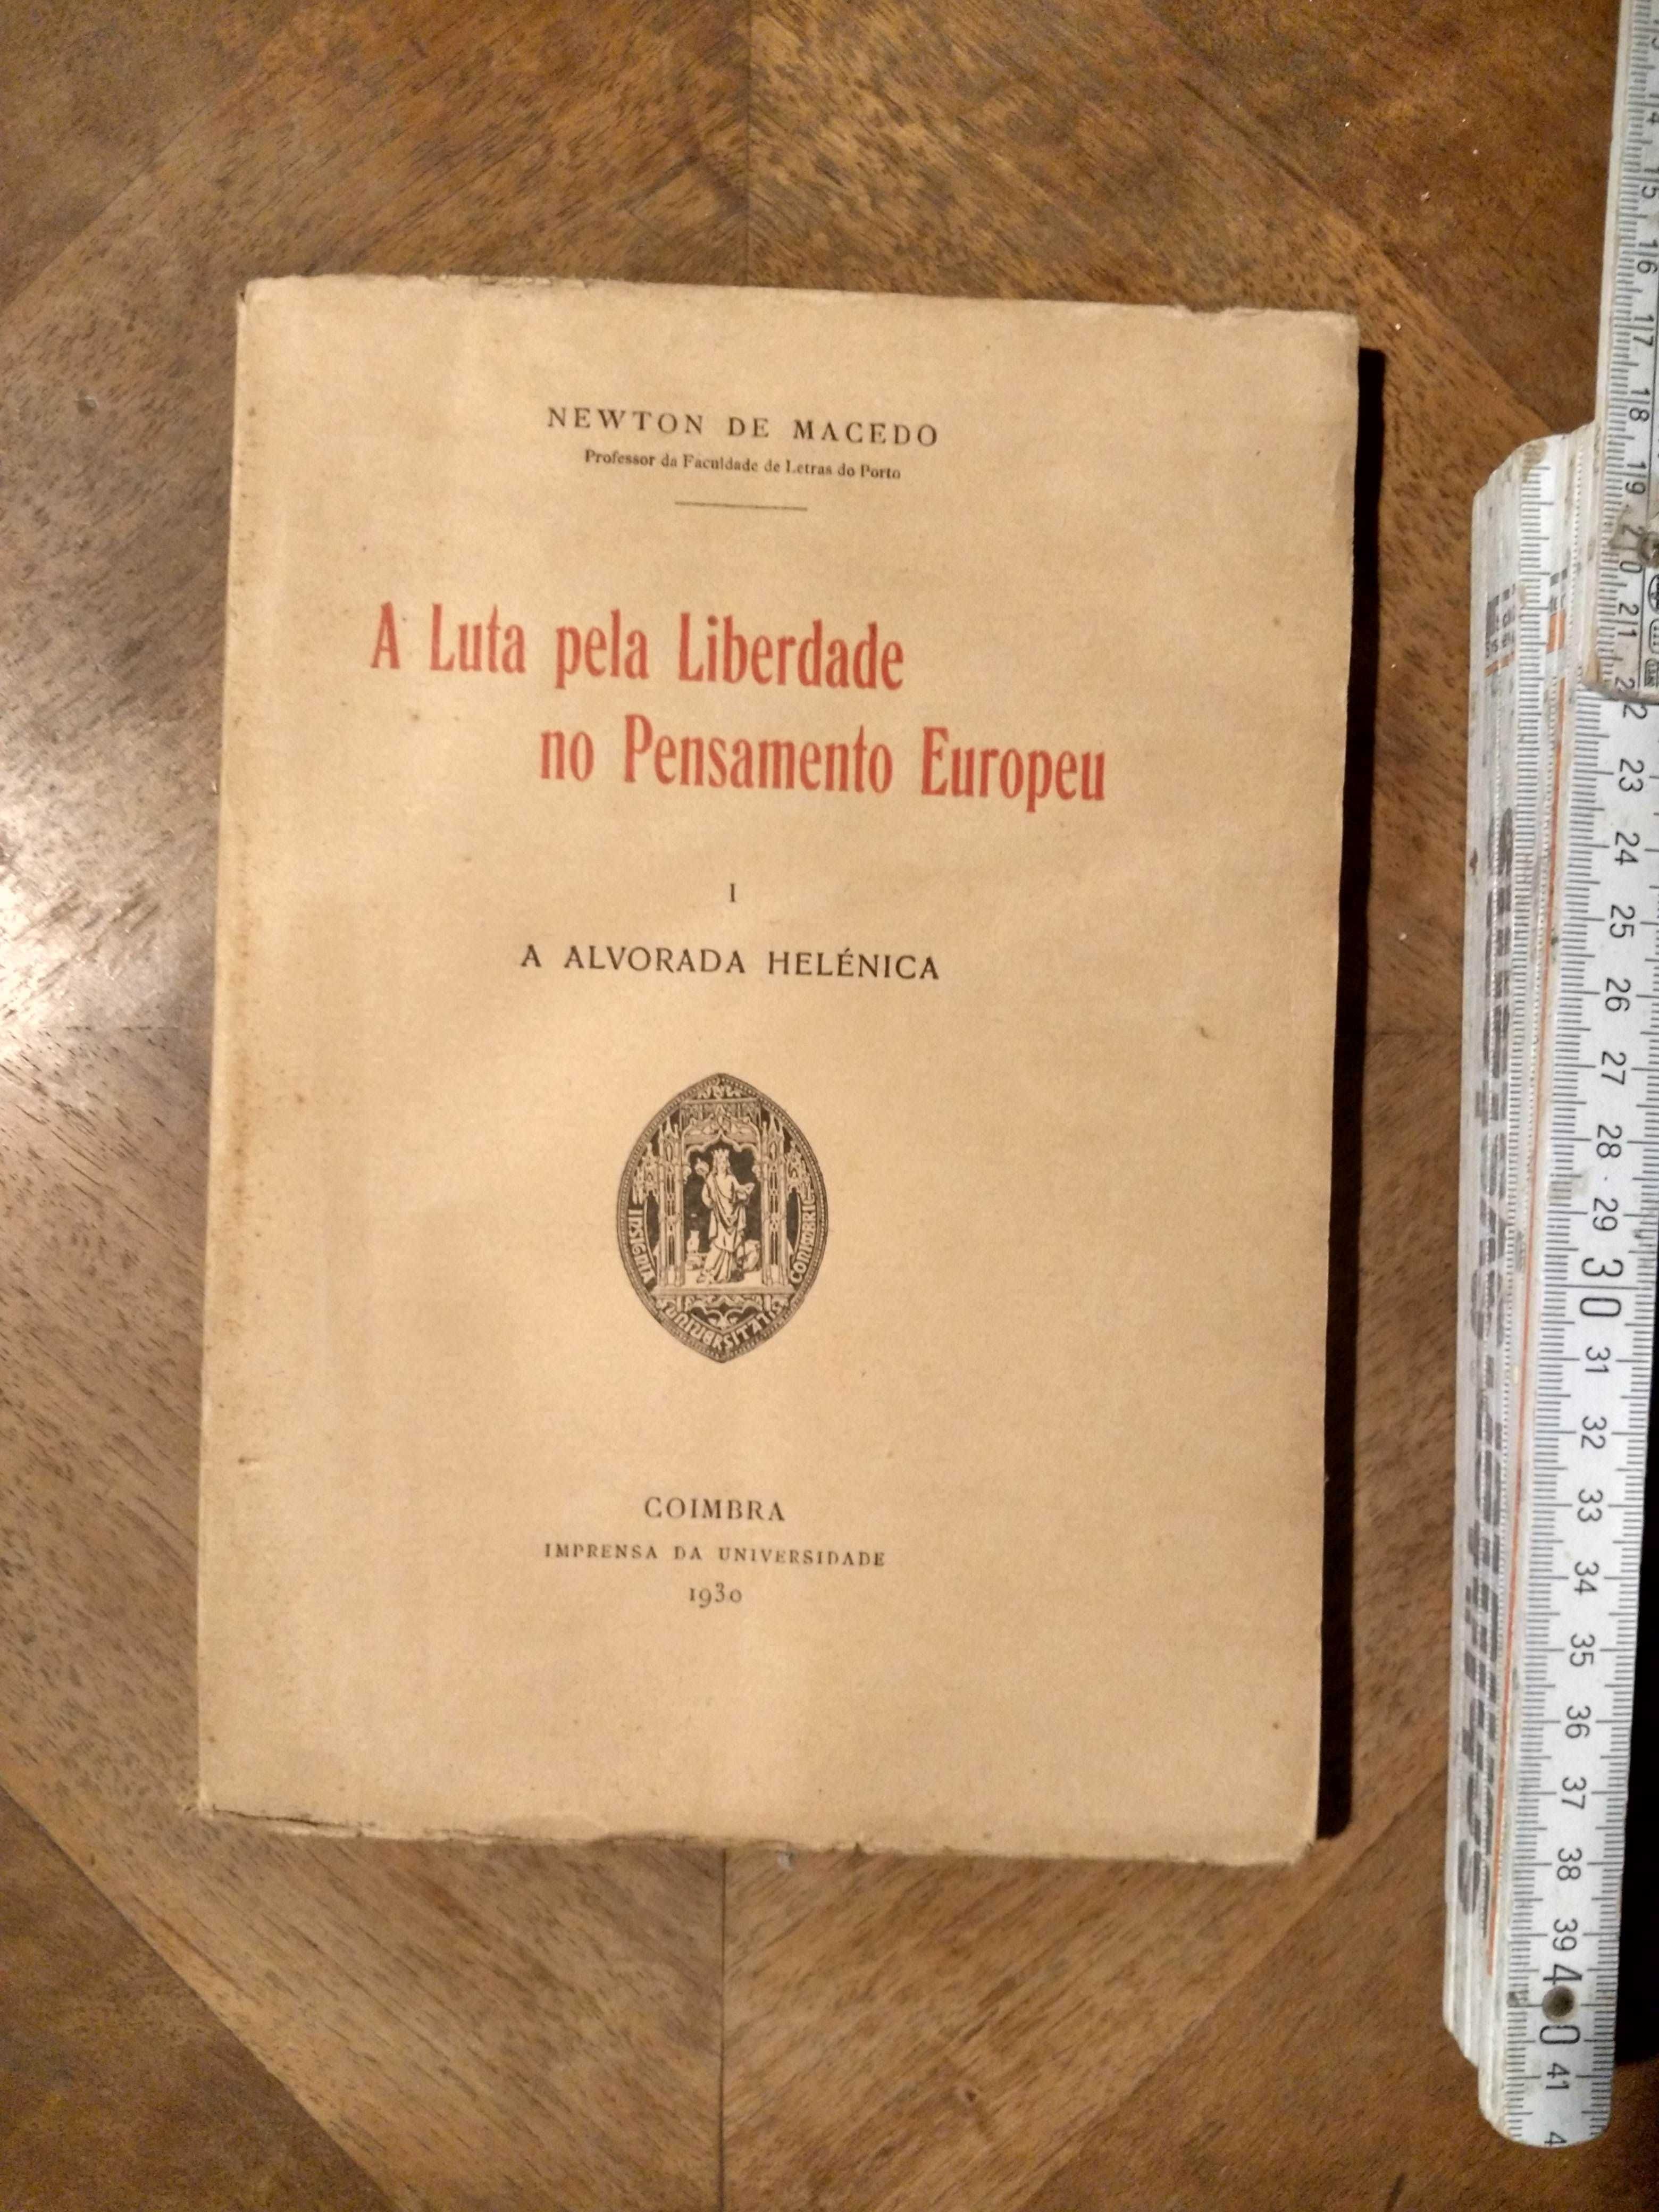 A LUTA PELA LIBERDADE NO PENSAMENTO EUROPEU - Newton de Macedo (1930)